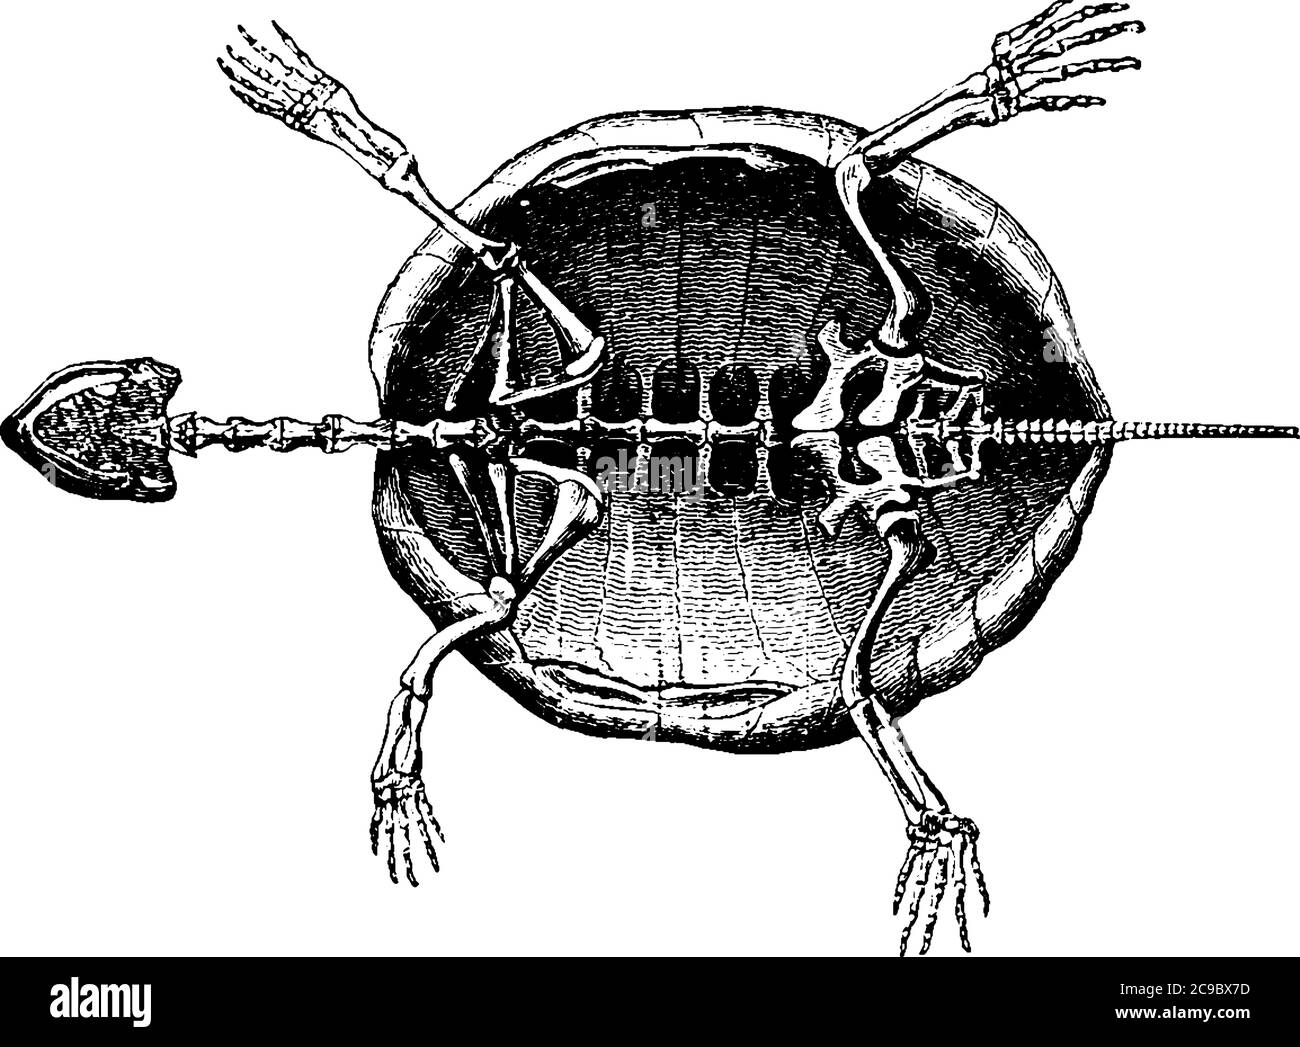 Bild mit Skelett einer Schildkröte, Vintage-Linienzeichnung oder Gravurillustration. Stock Vektor